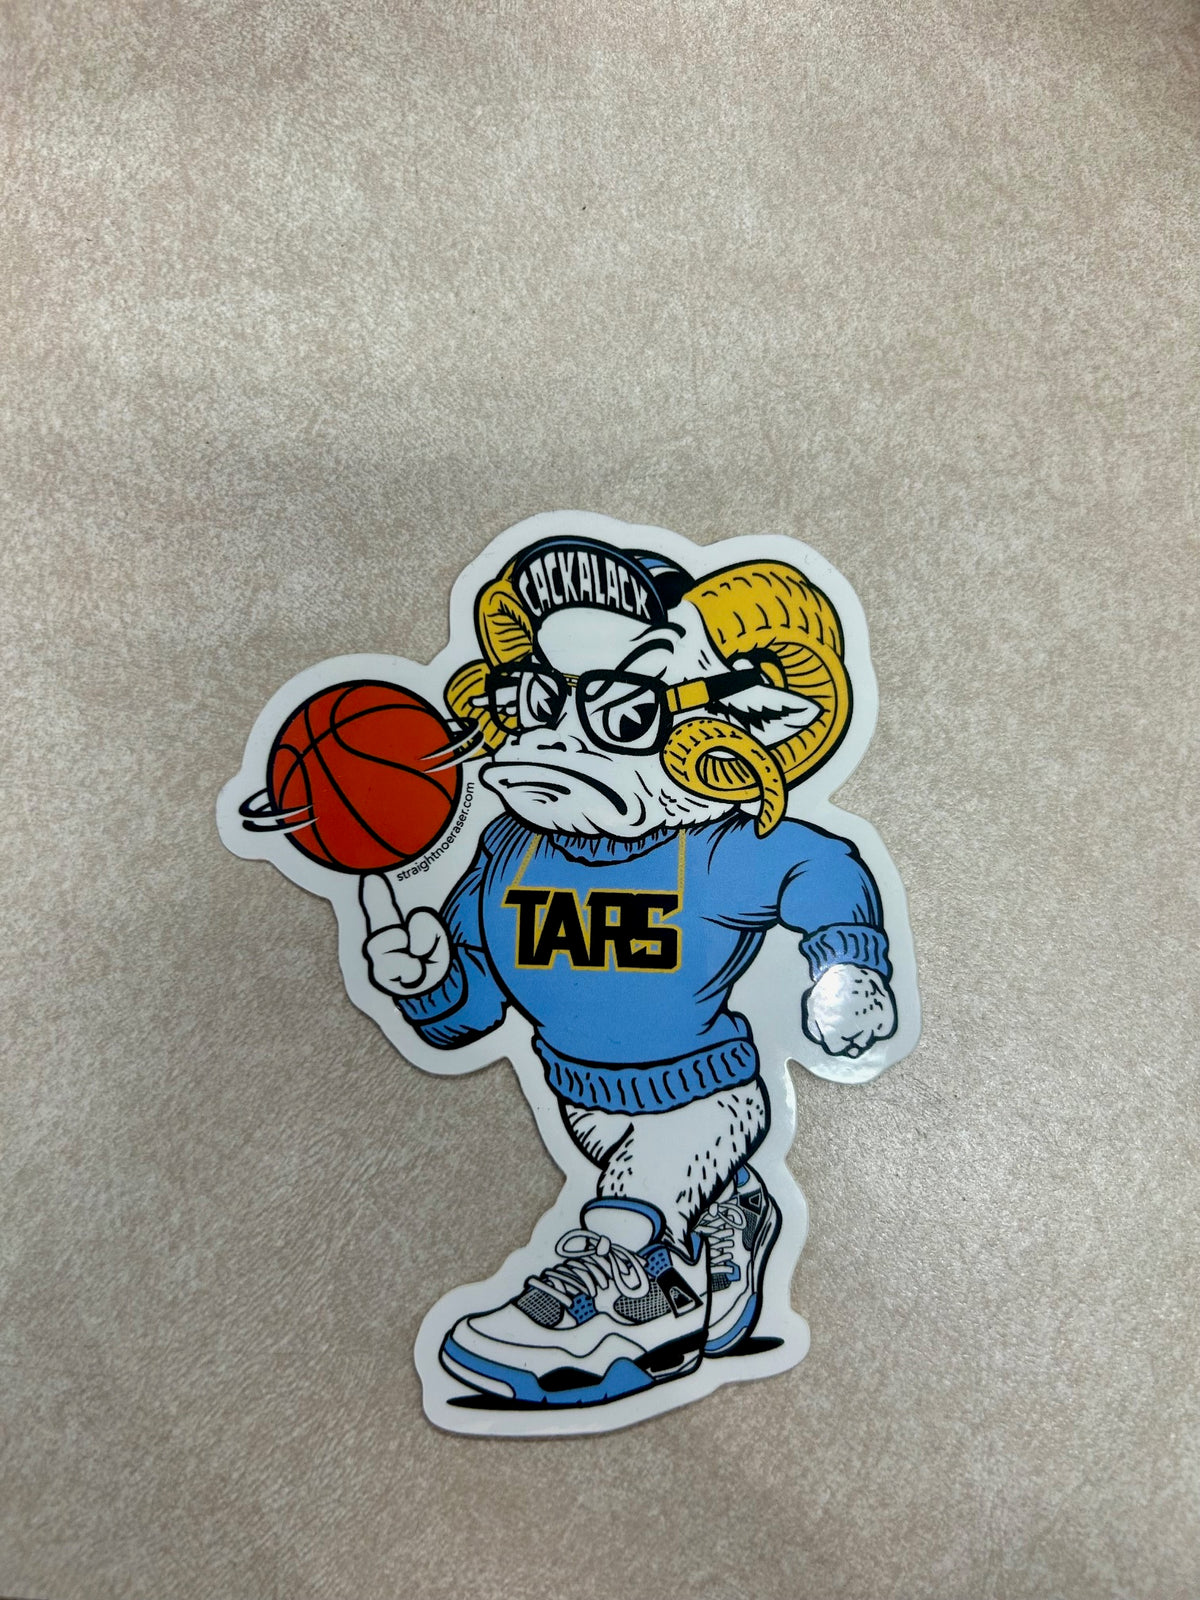 TARS Sticker